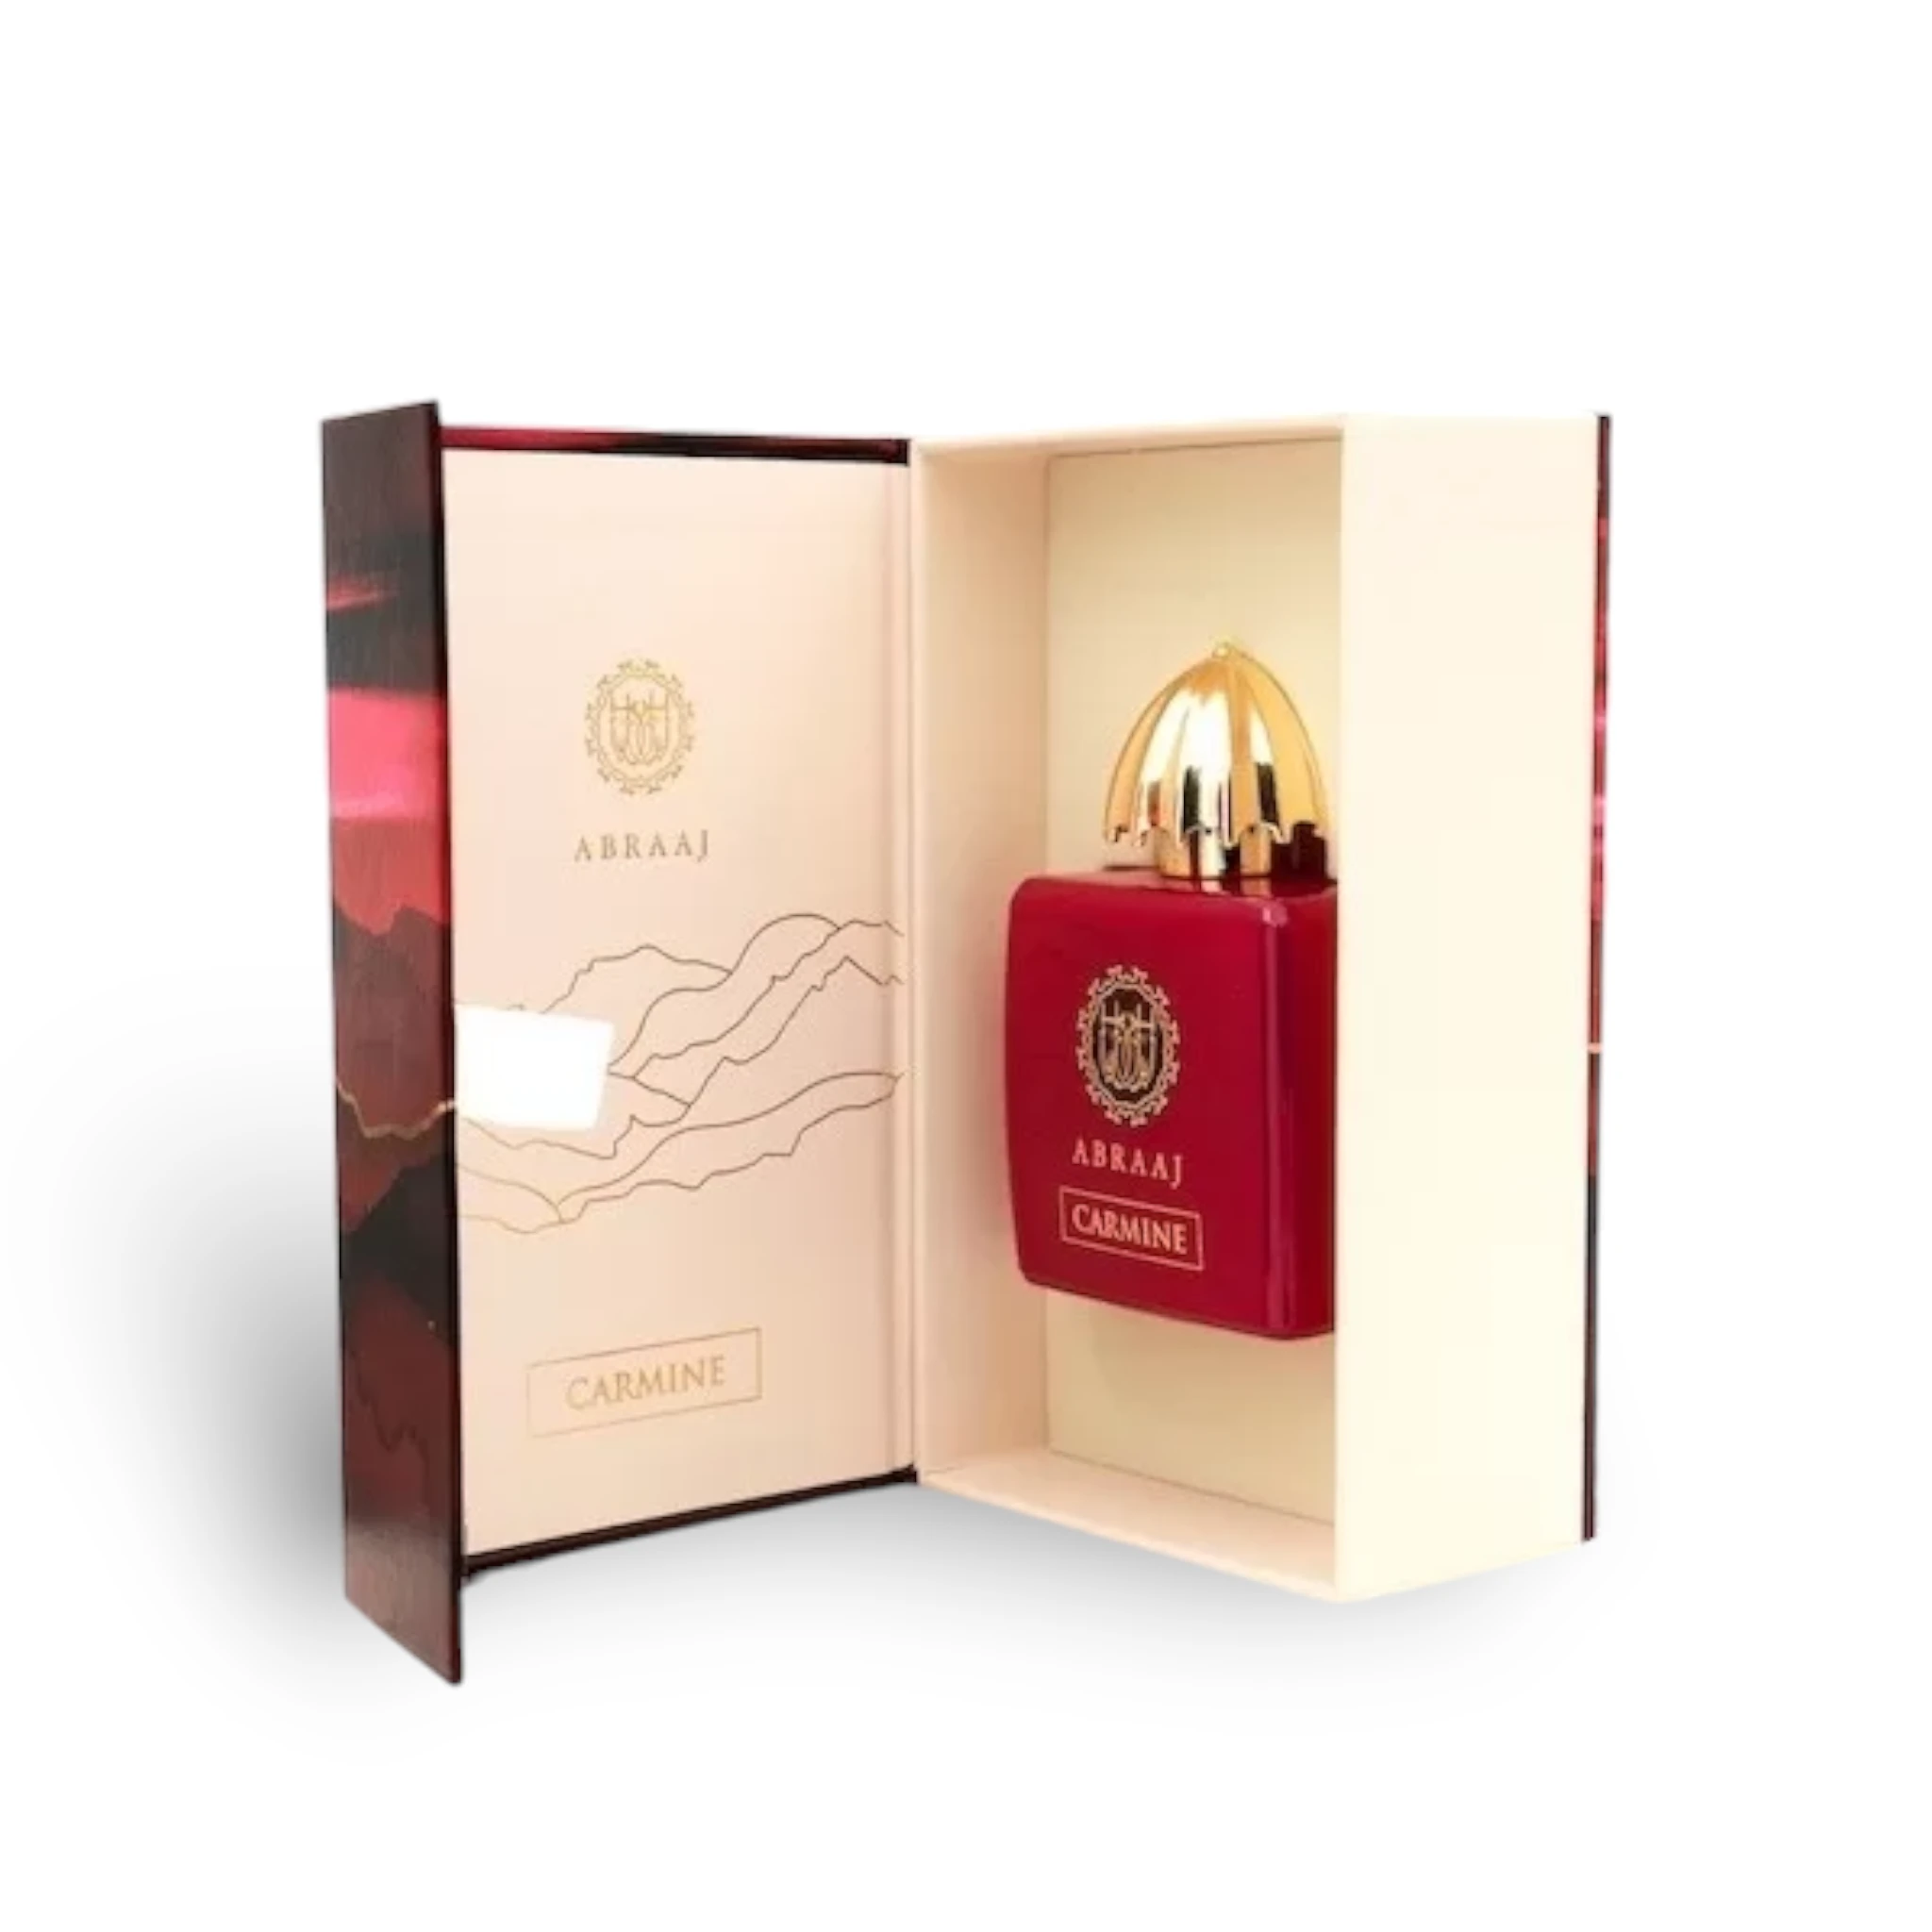 Abraaj Carmine Perfume Eau De Parfum 100Ml By Fa Paris (Fragrance World)